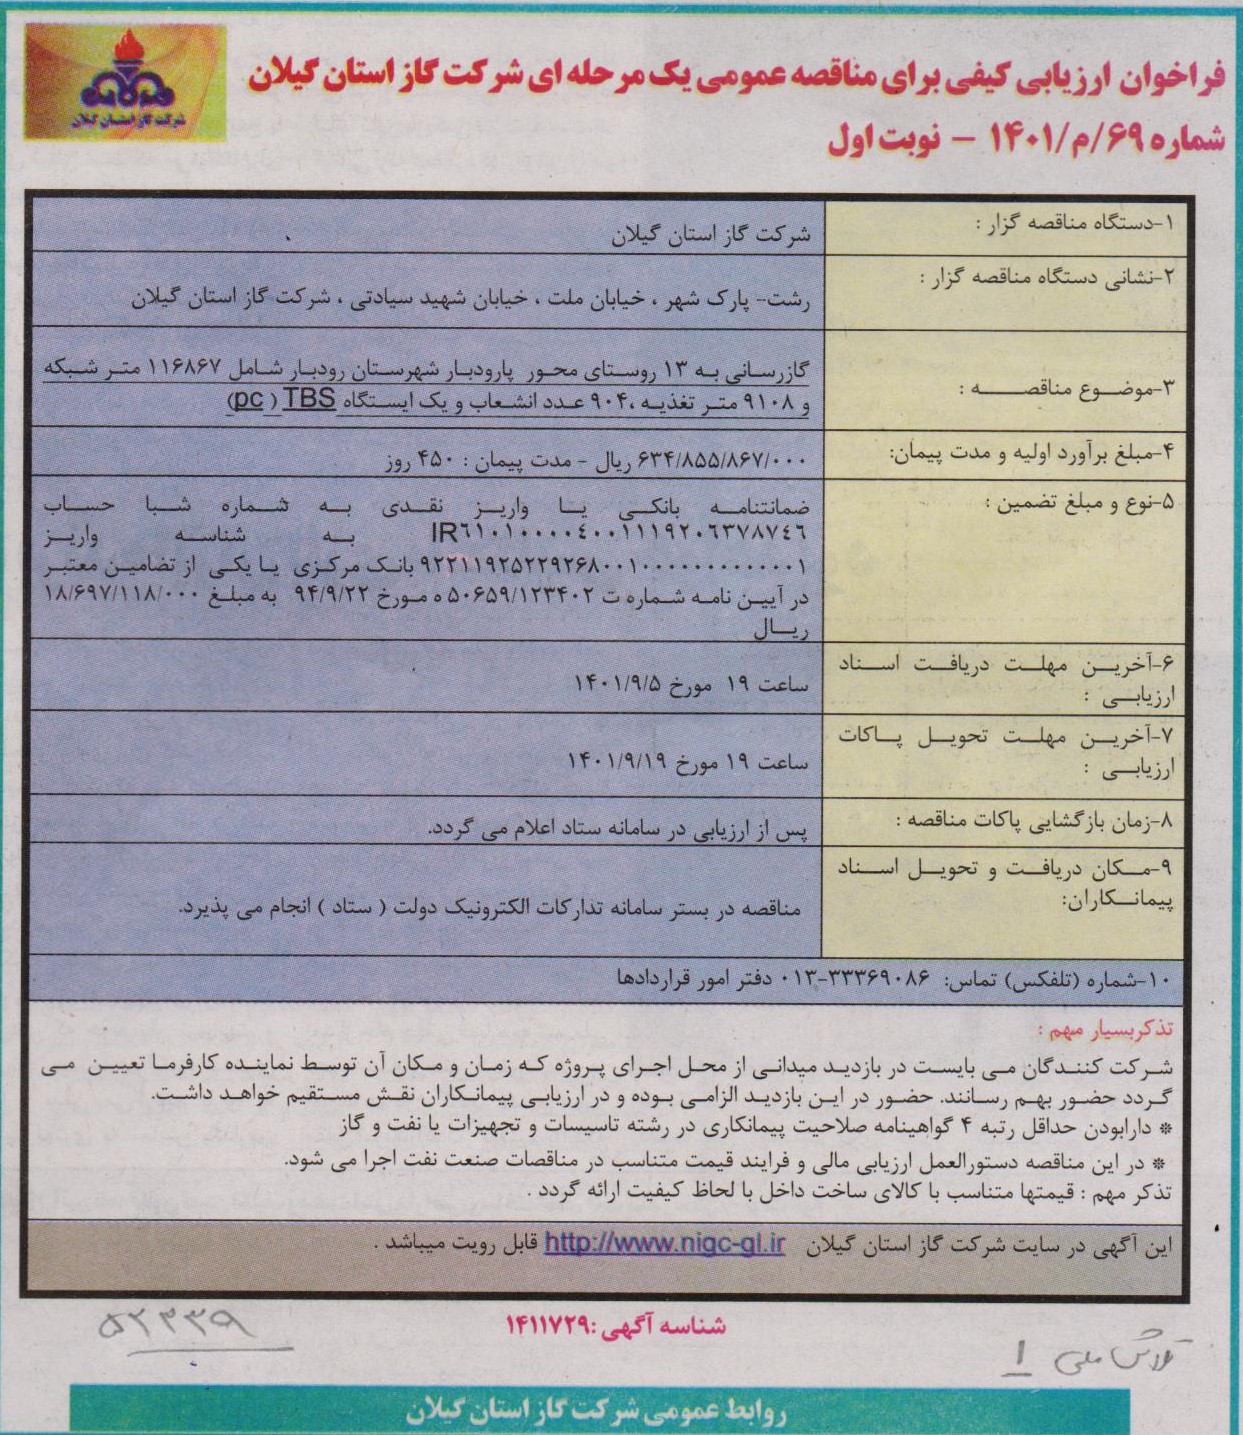 گازرسانی به 13 روستای محور پارودبار شهرستان رودبار - 29 آبان 1401